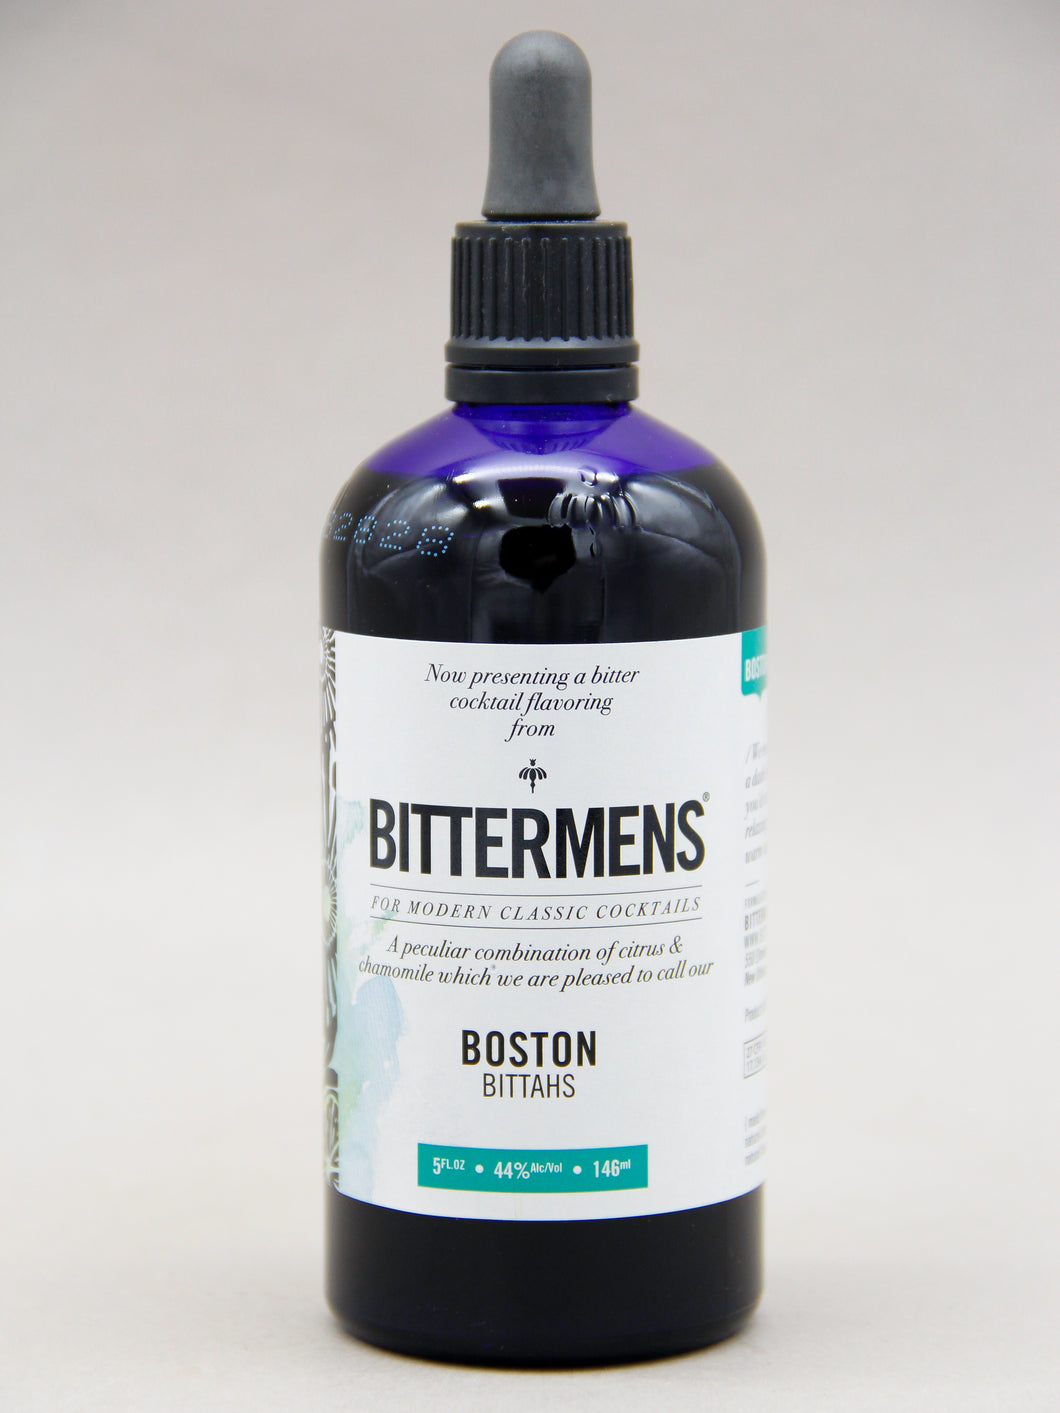 Bittermens Boston Bittahs (44%, 5oz)